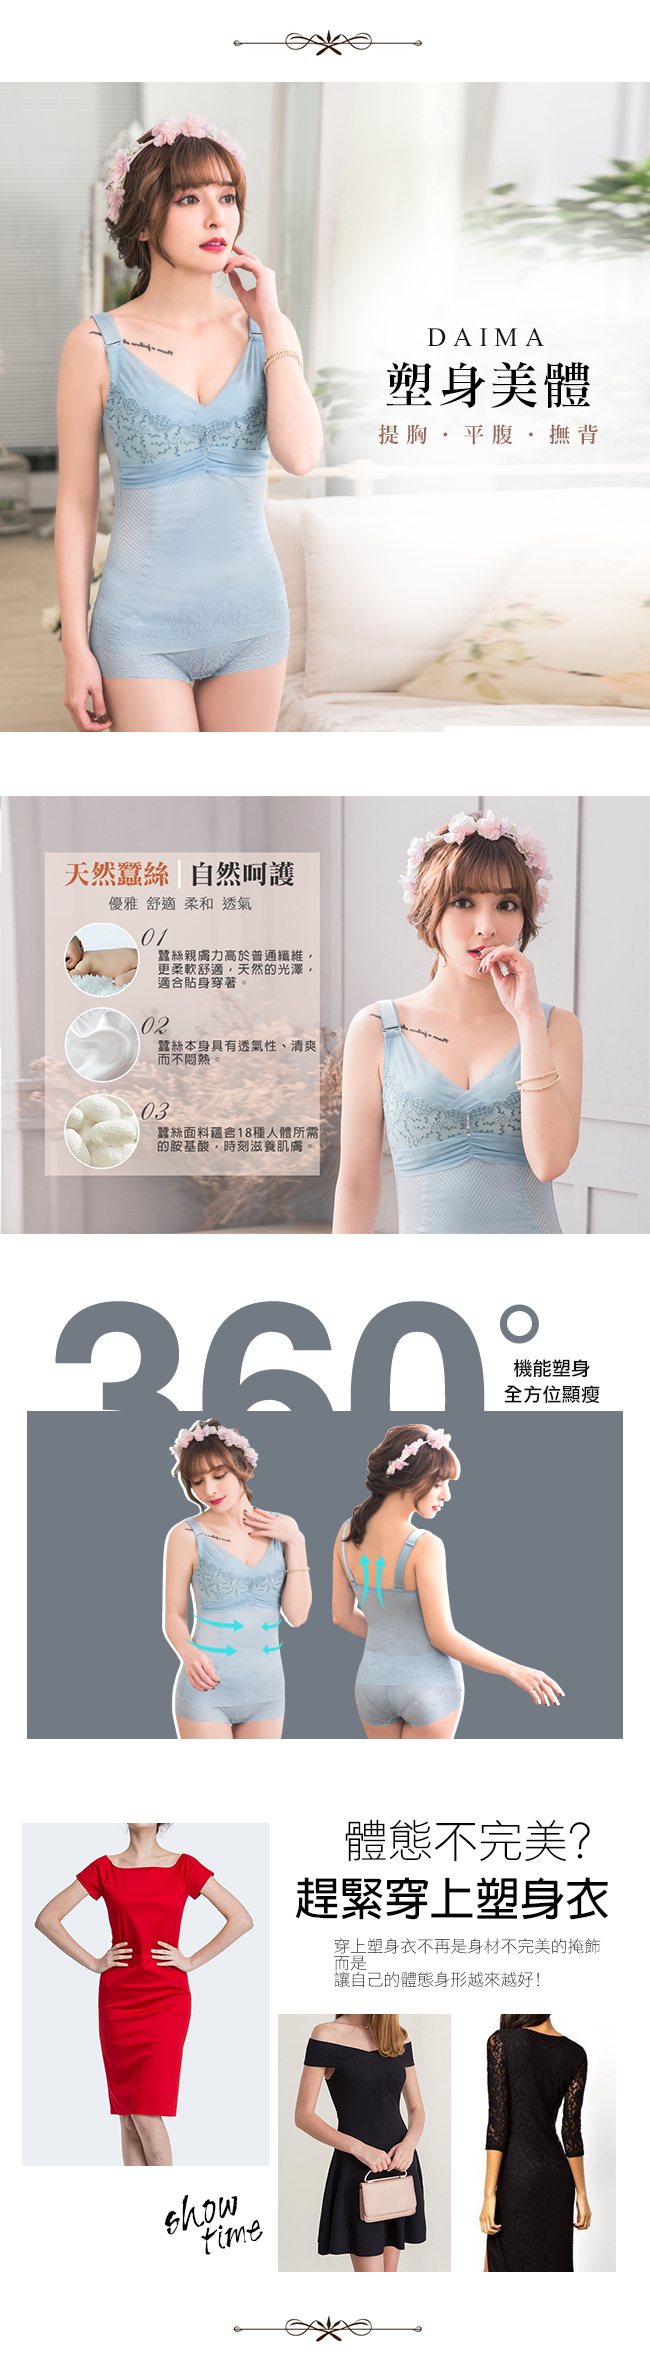 無鋼圈420D蠶絲‧魅力爆乳馬甲塑身衣(桃紅)【Daima黛瑪】